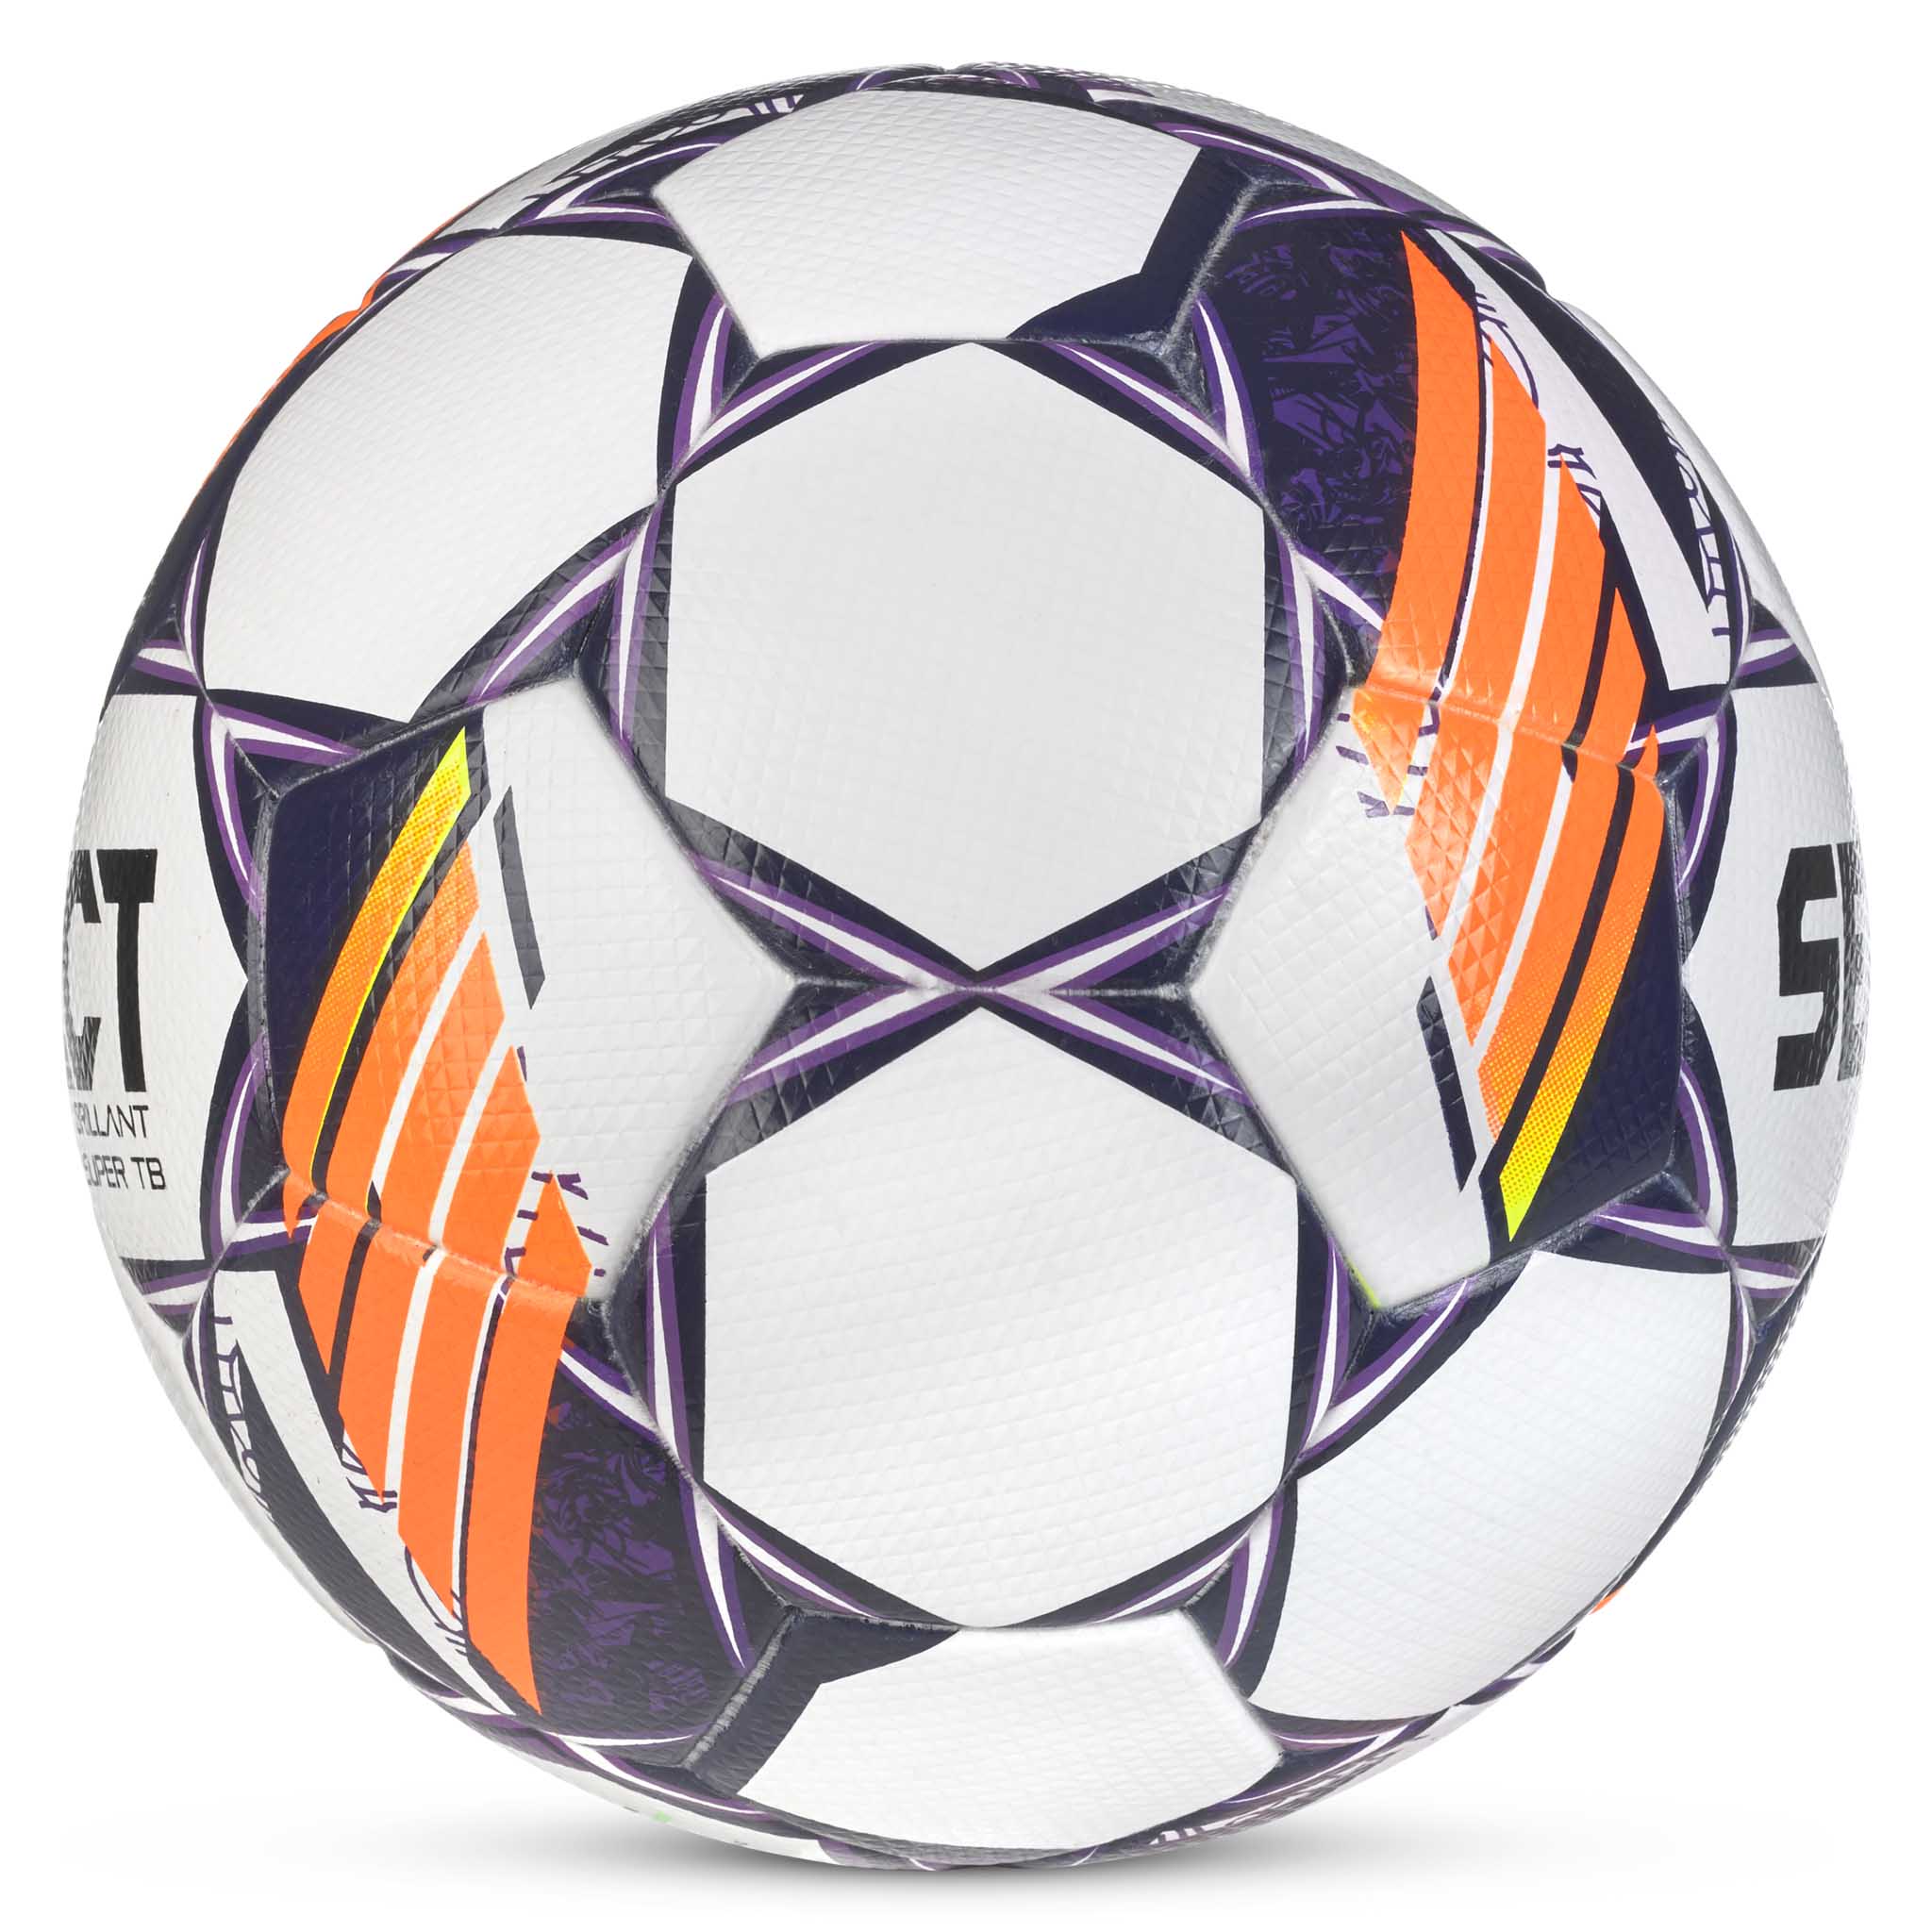 Fodbold - Brillant Super TB #farve_hvid/lilla